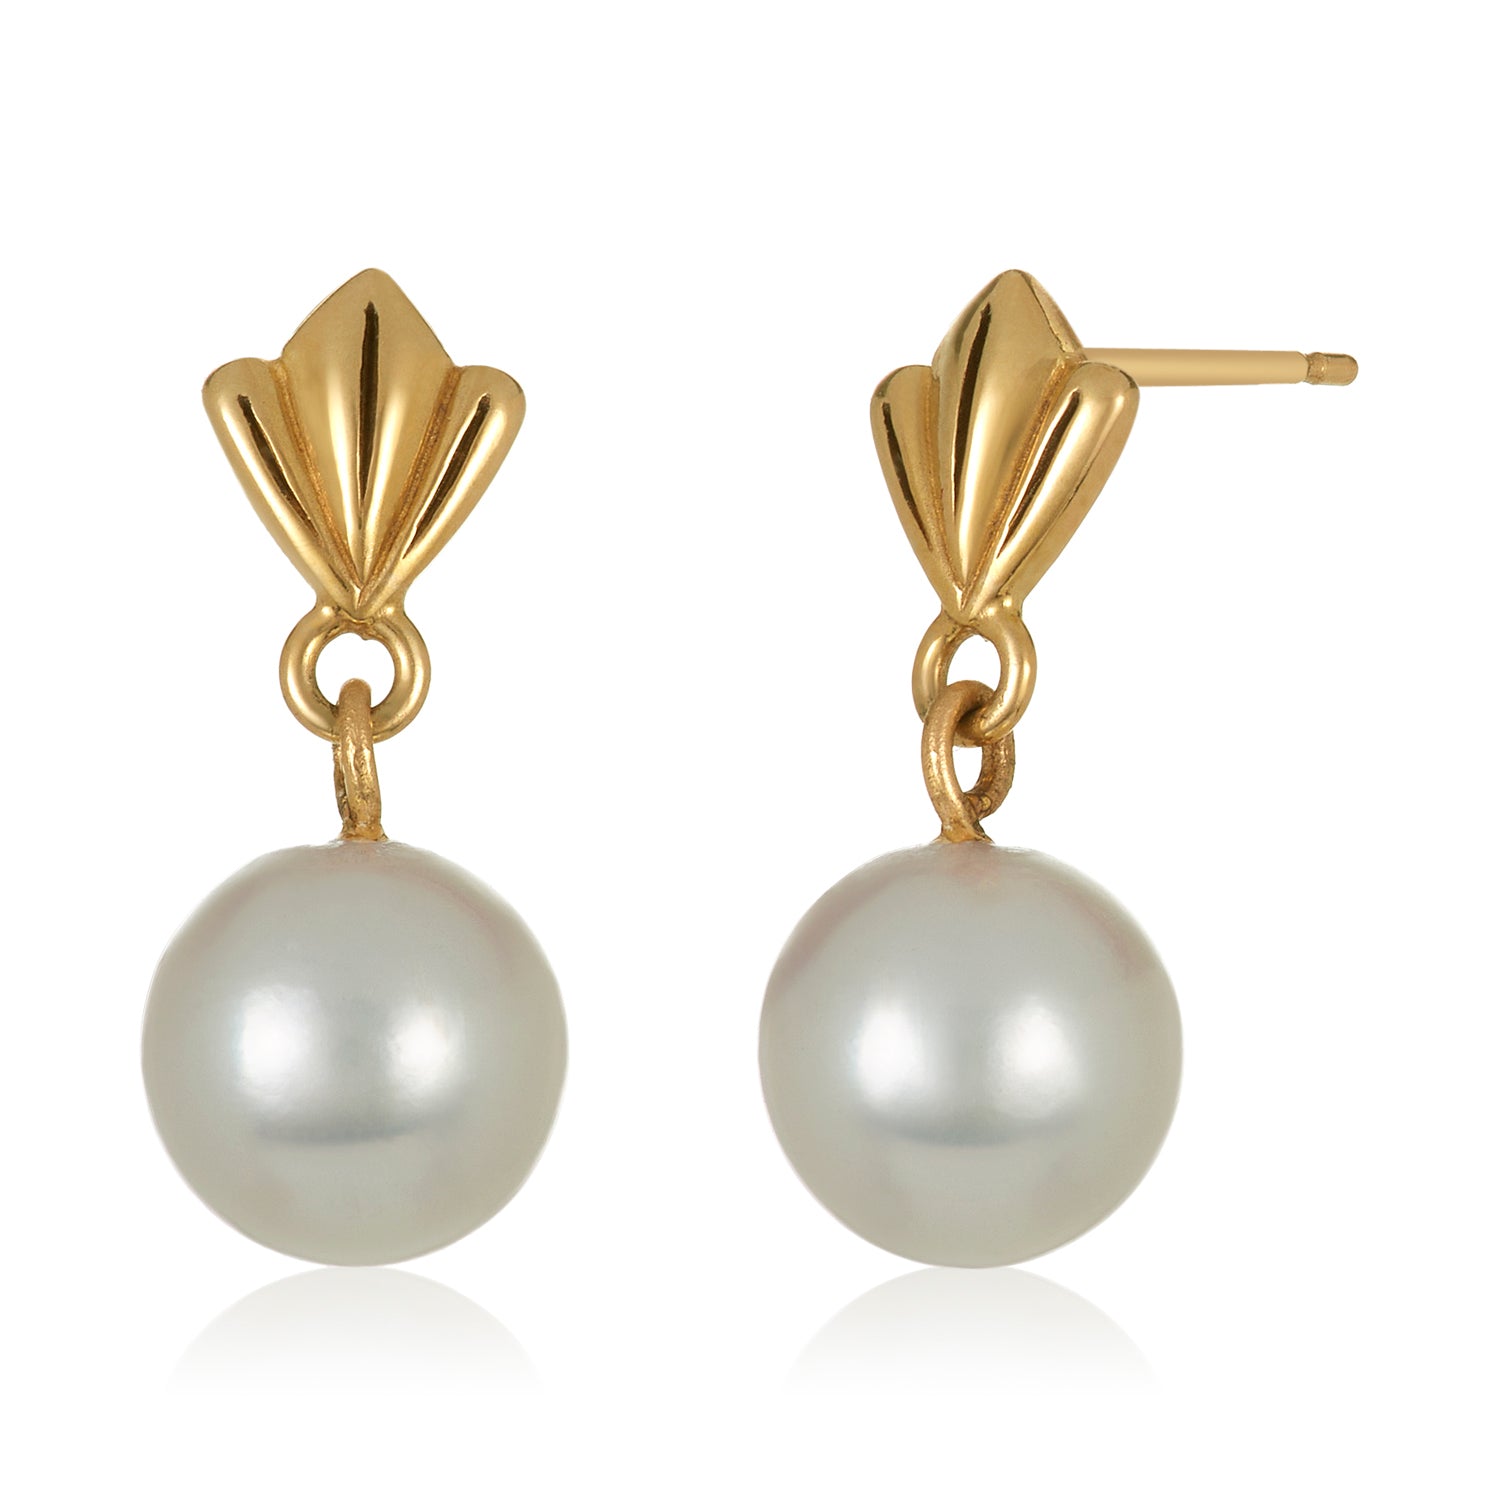 Lily Flower Pearl earrings in 14k